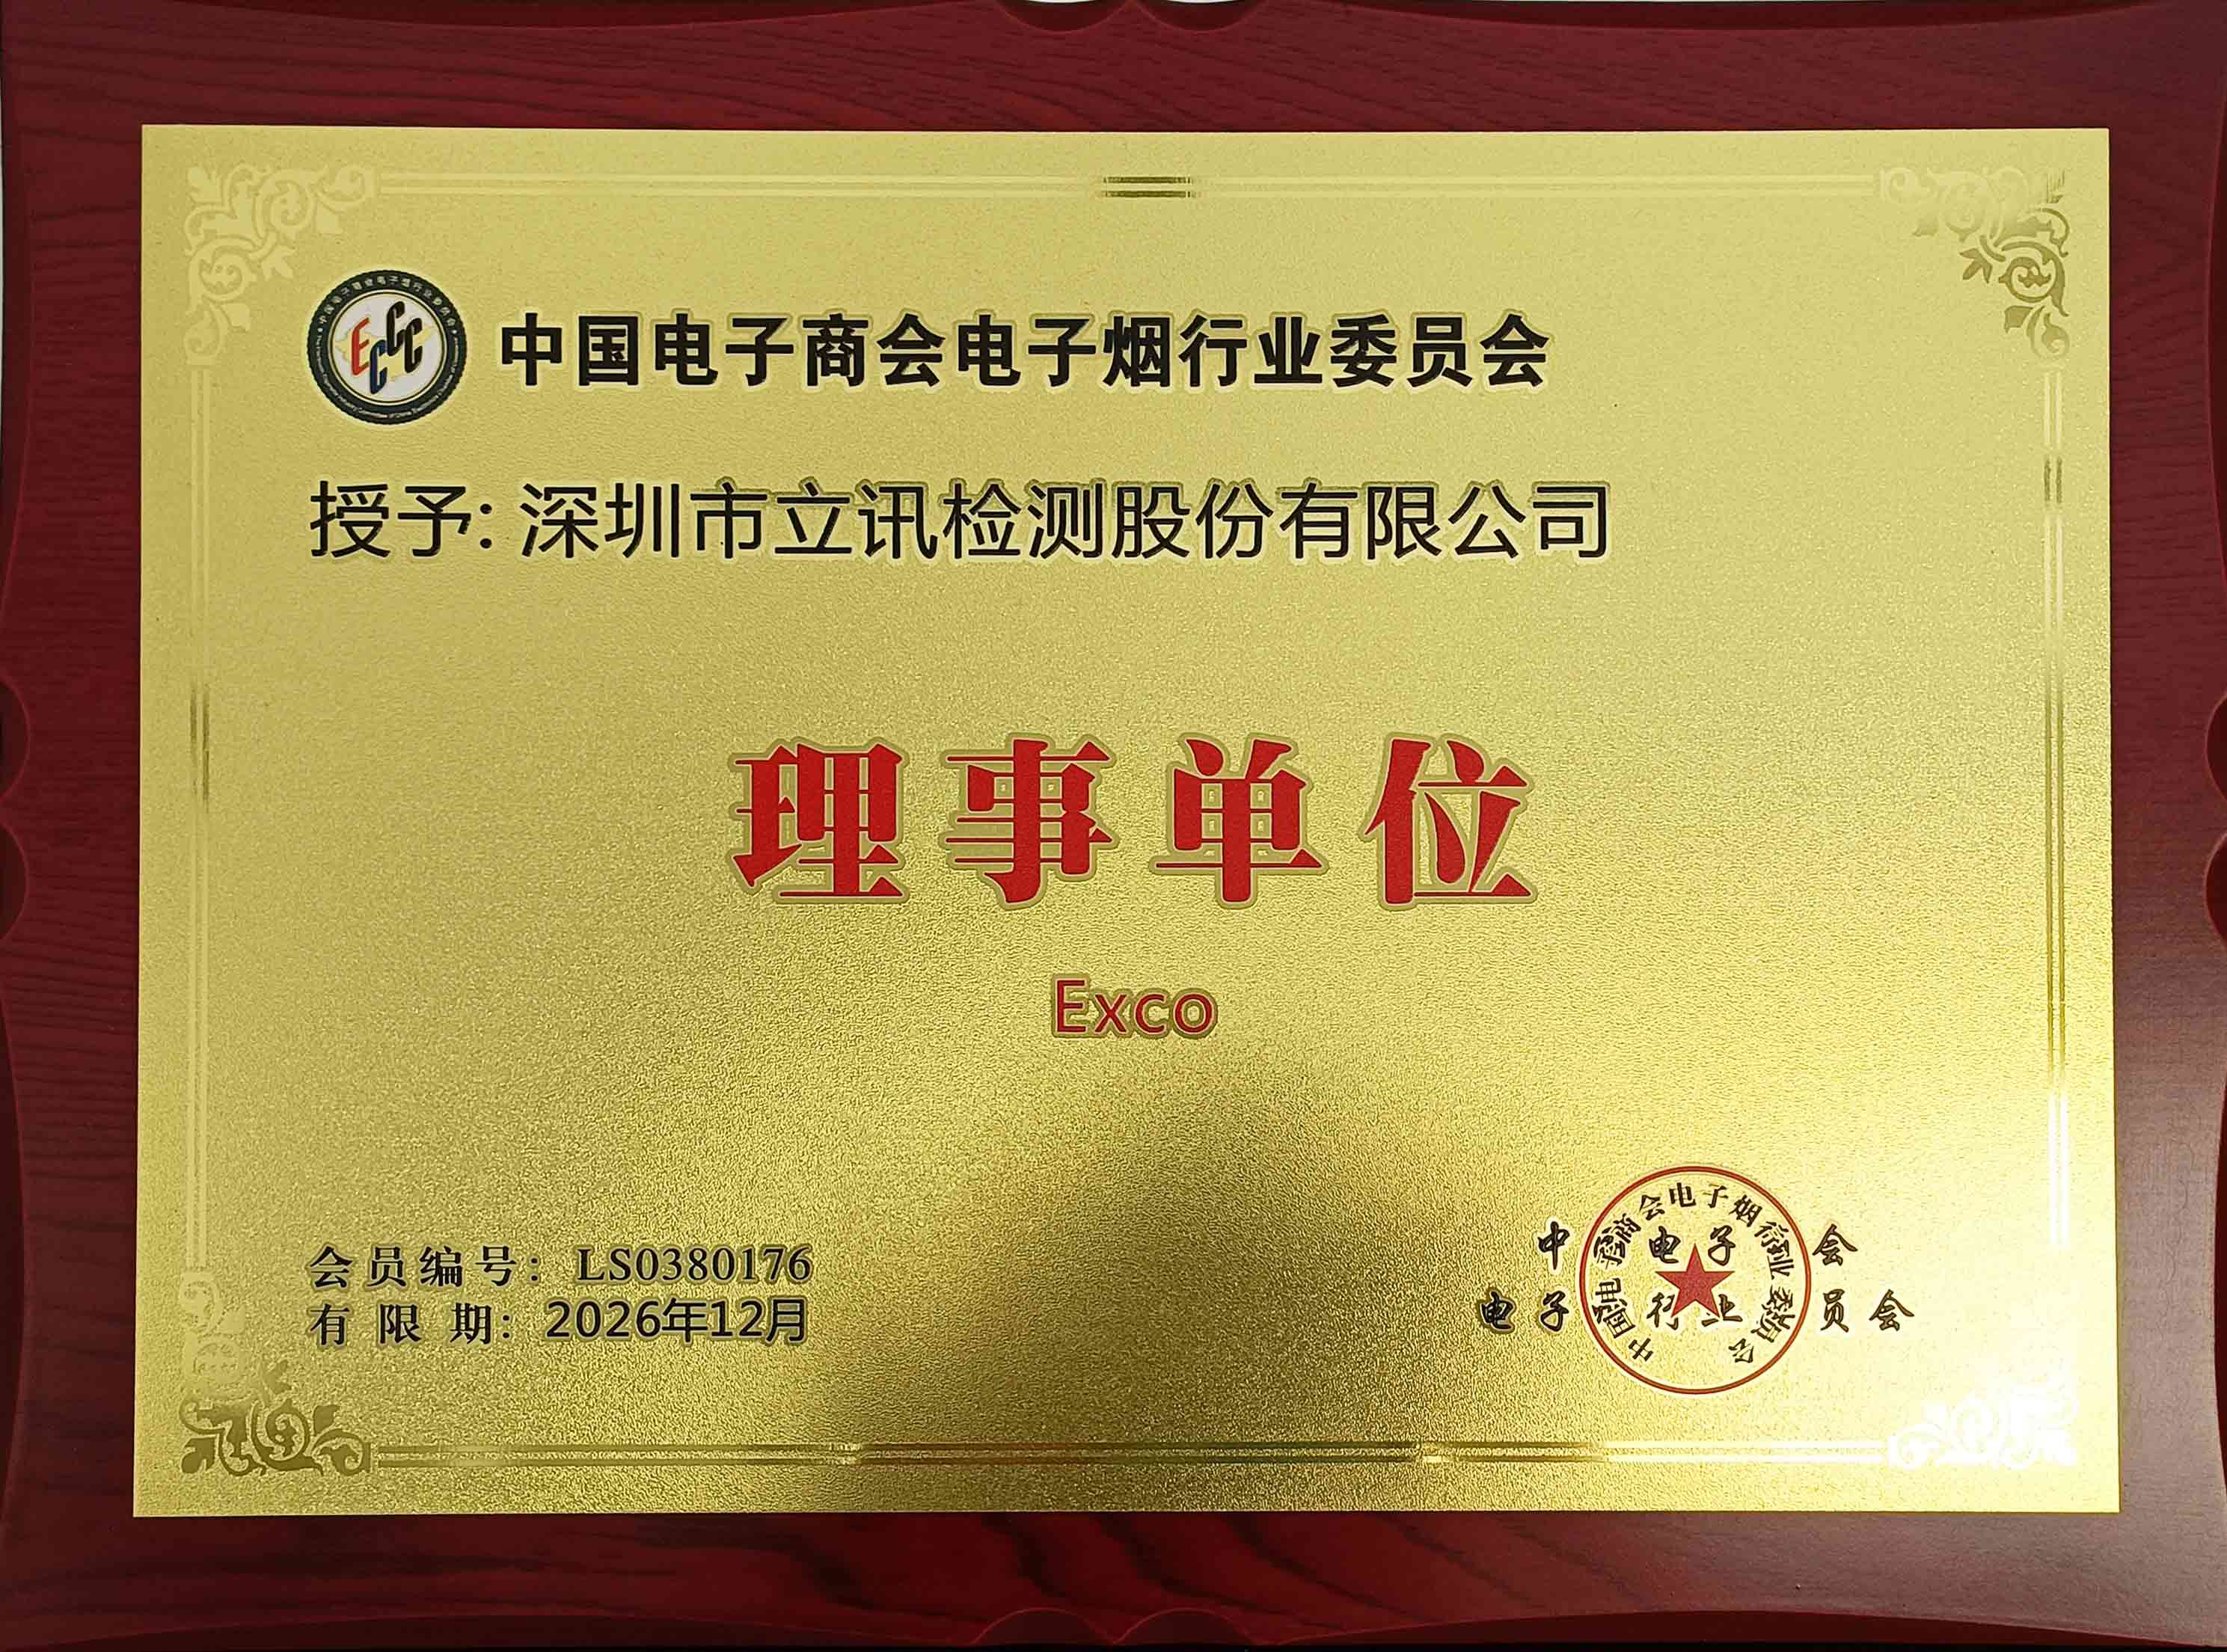 中国电子商会电子烟行业委员会理事单位